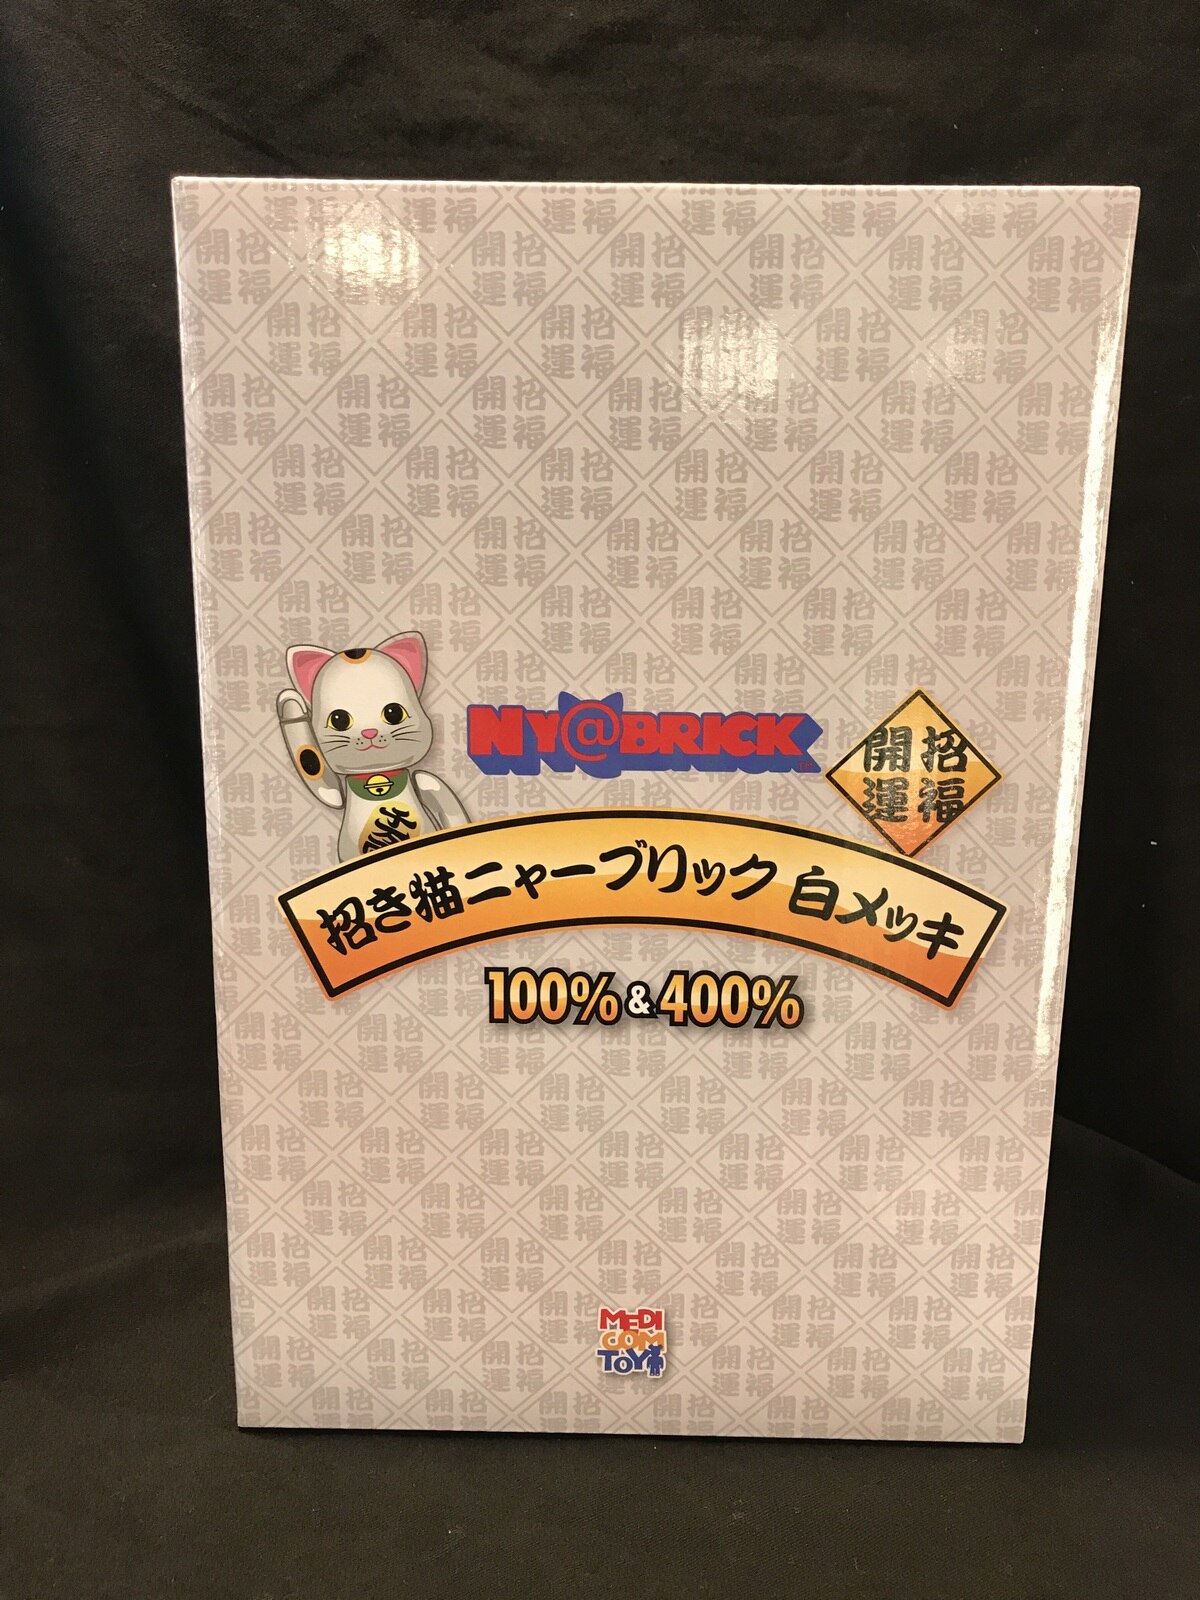 【２箱セット】招き猫 ニャーブリック 白メッキ 100% & 400%